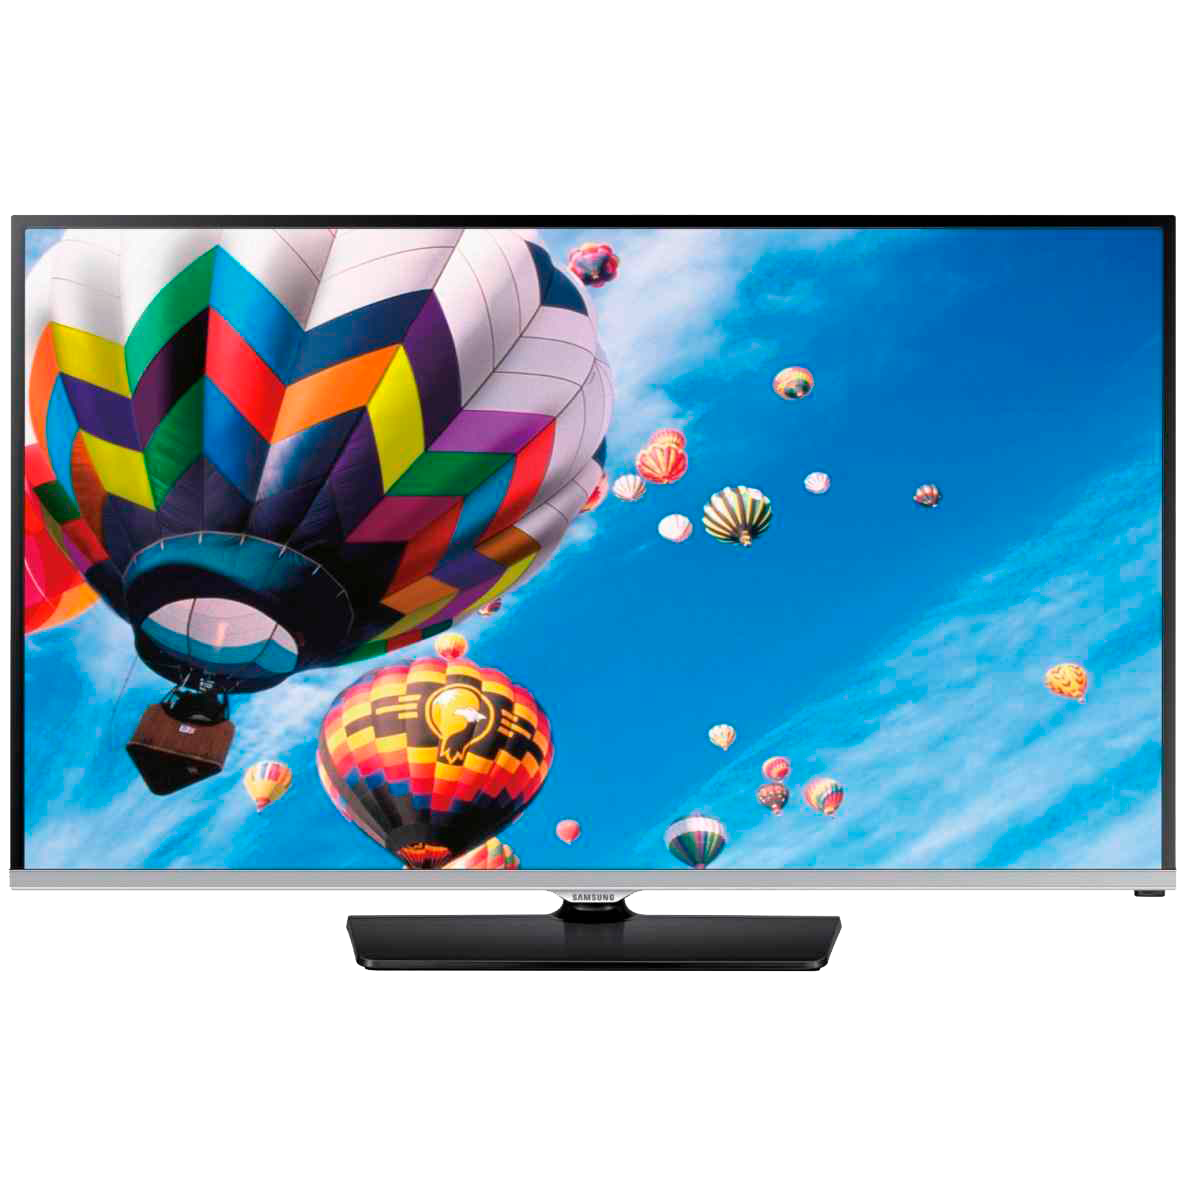 Телевизоры samsung 3. Samsung ue40h5000 led. TV Samsung led 22. Телевизоры самсунг 40h6400. Телевизор самсунг led ue40.